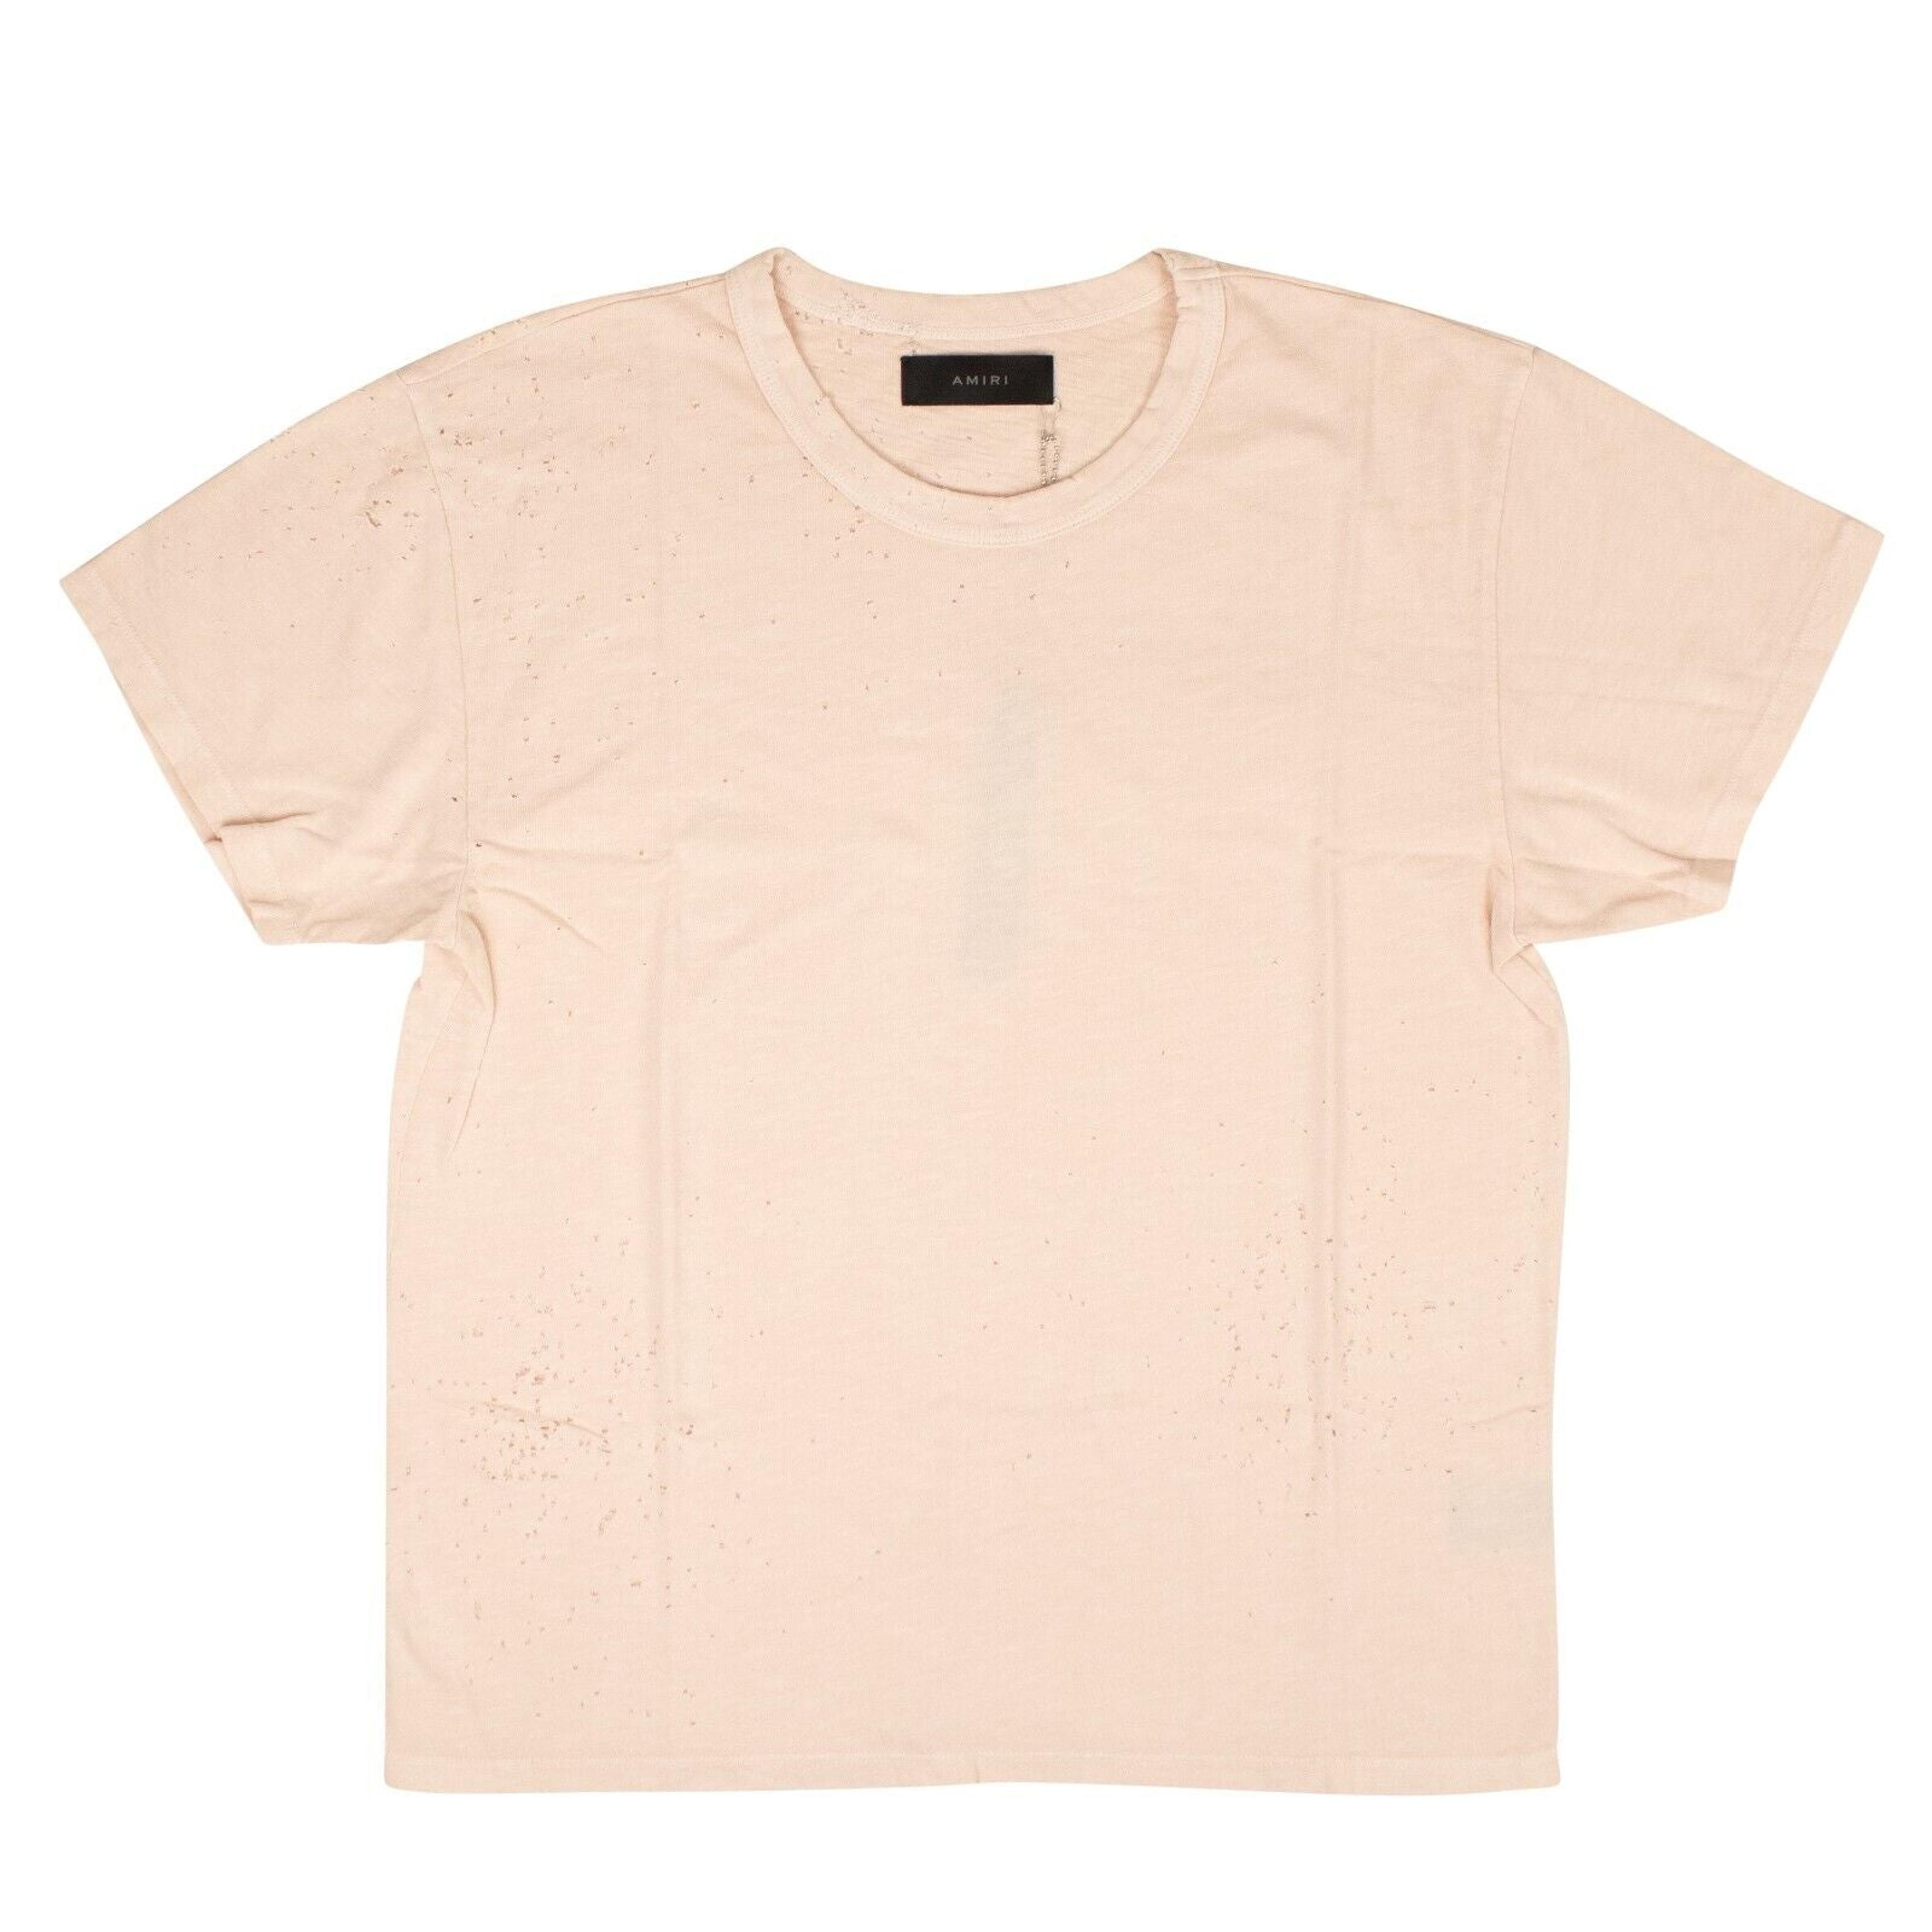 Alternate View 1 of Pink Shotgun Cotton T-Shirt